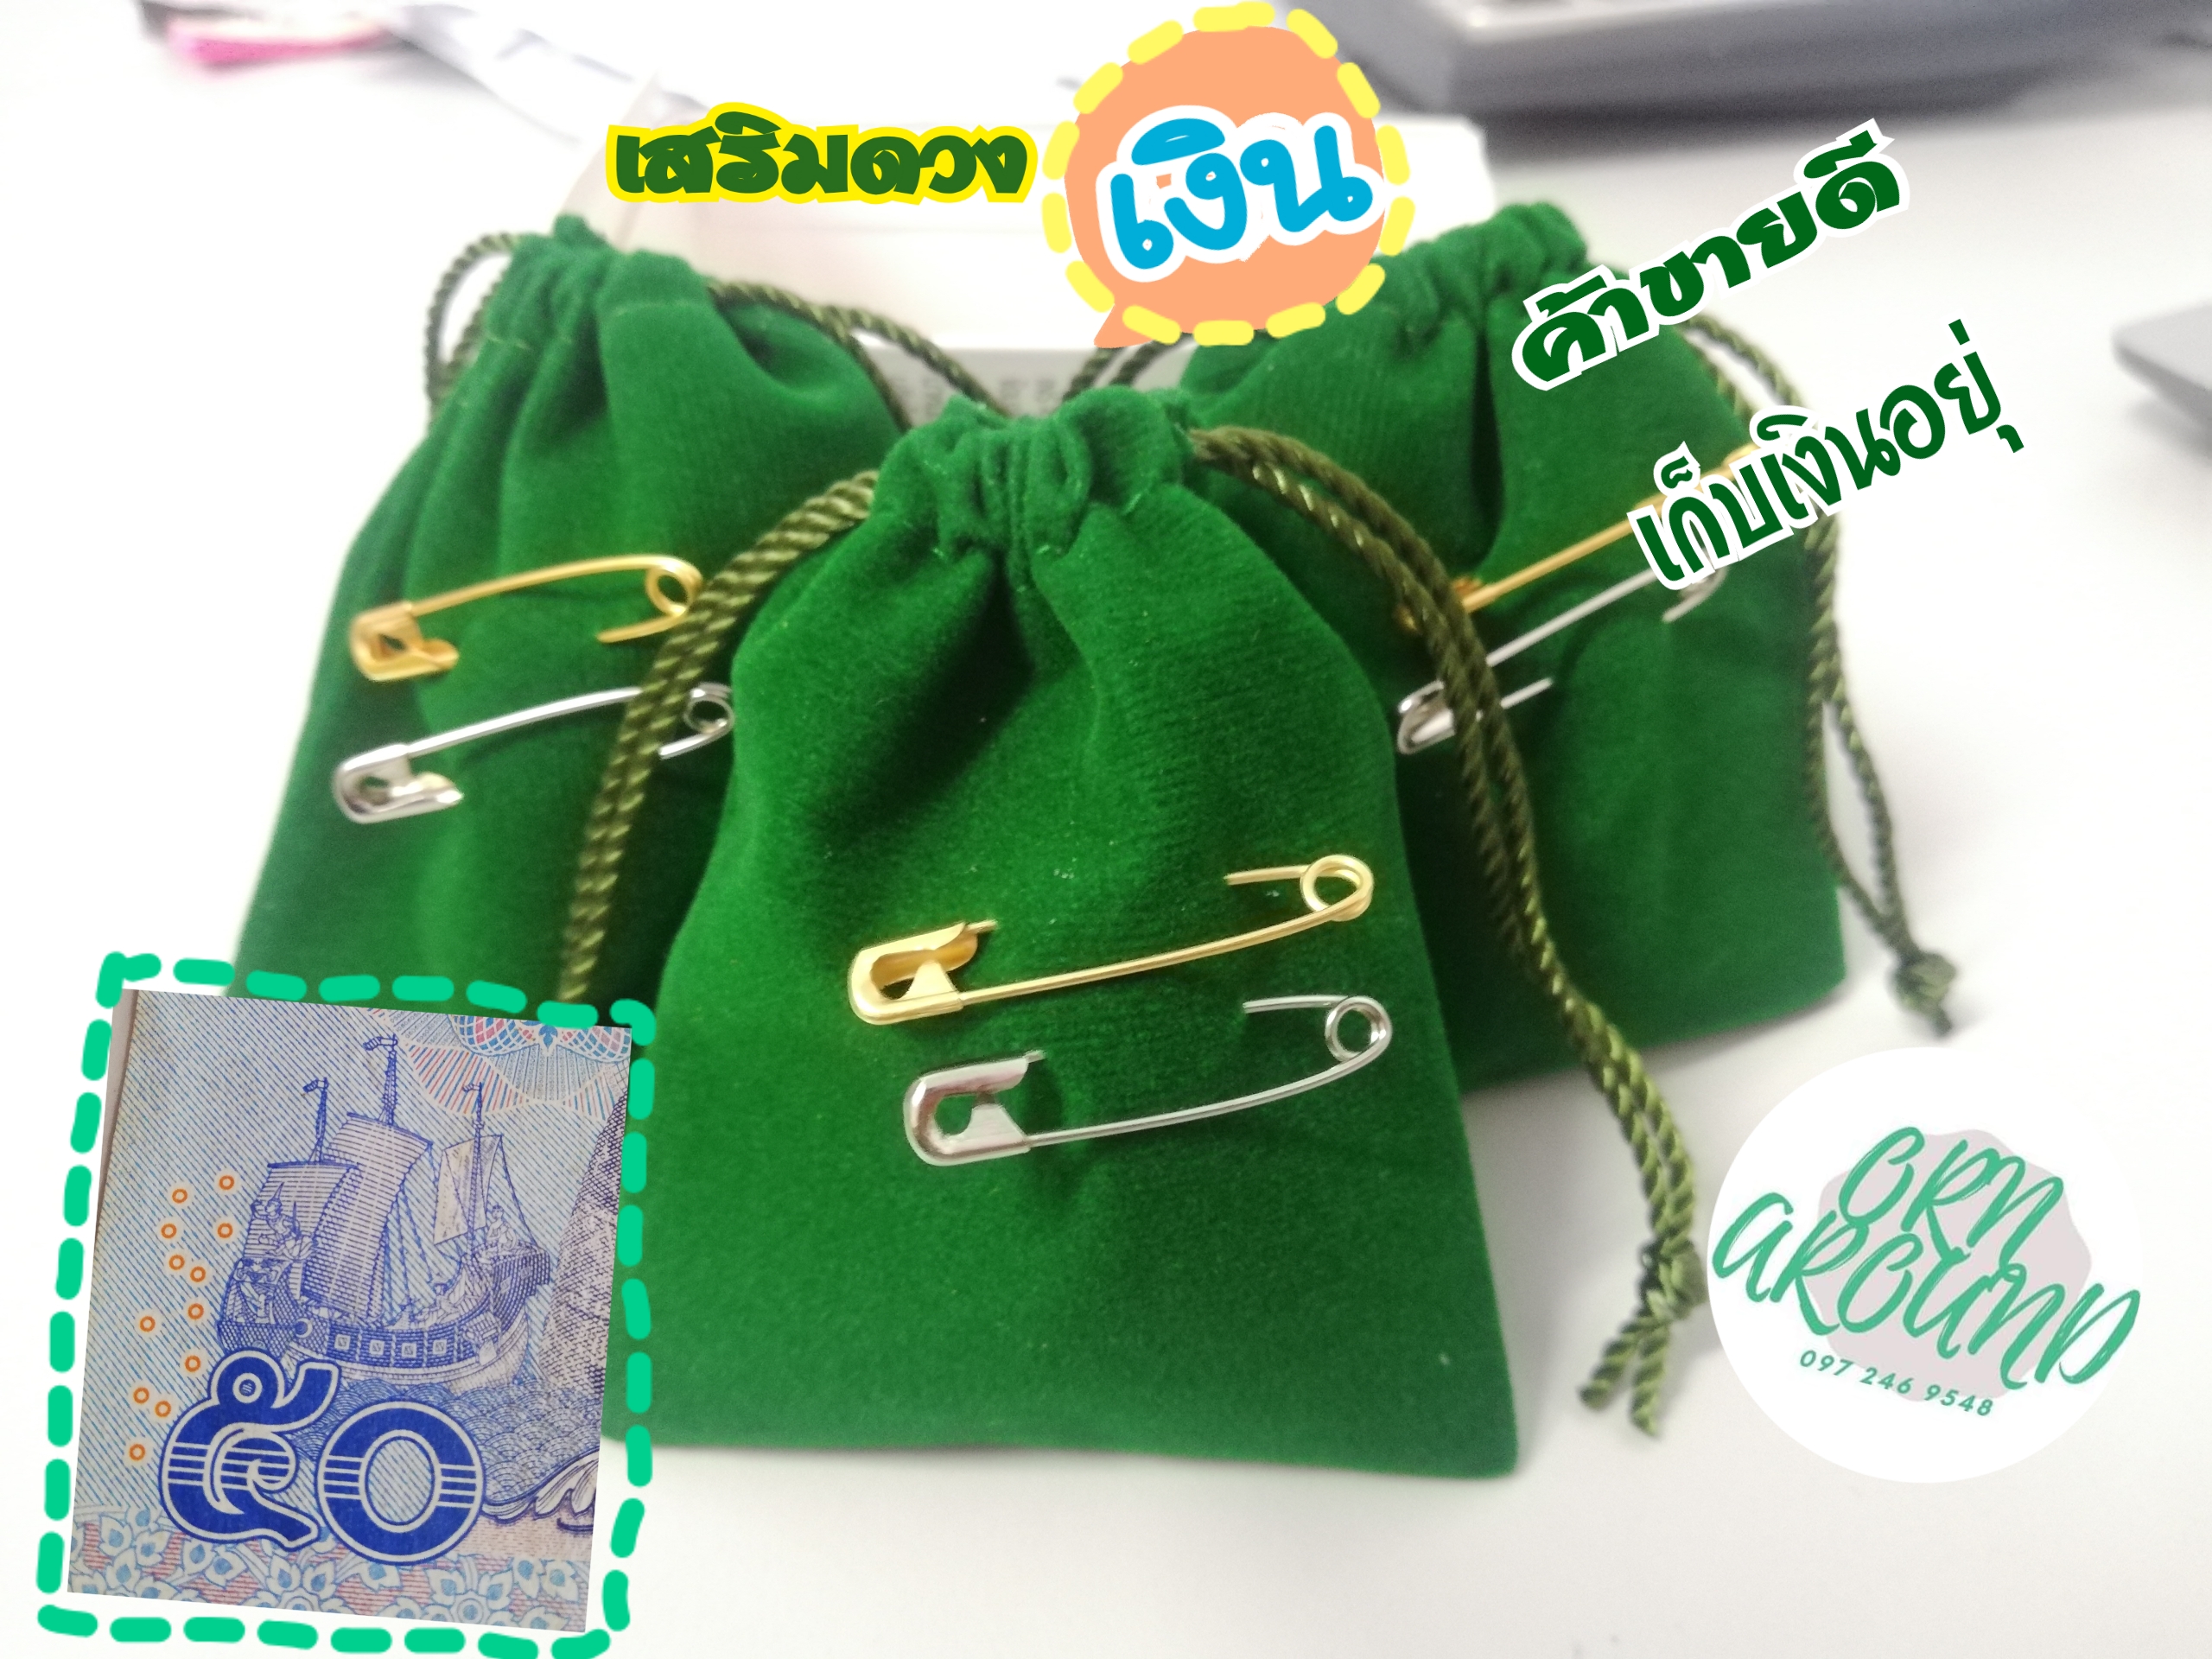 ถุงผ้าสีเขียว กระเป๋าใส่เหรียญ กระเป๋าสีเขียว กระเป๋าใสเหรียญสีเขียว กระเป๋าเขียวเหนี่ยวทรัพย์ อ.เป็นหนึ่ง